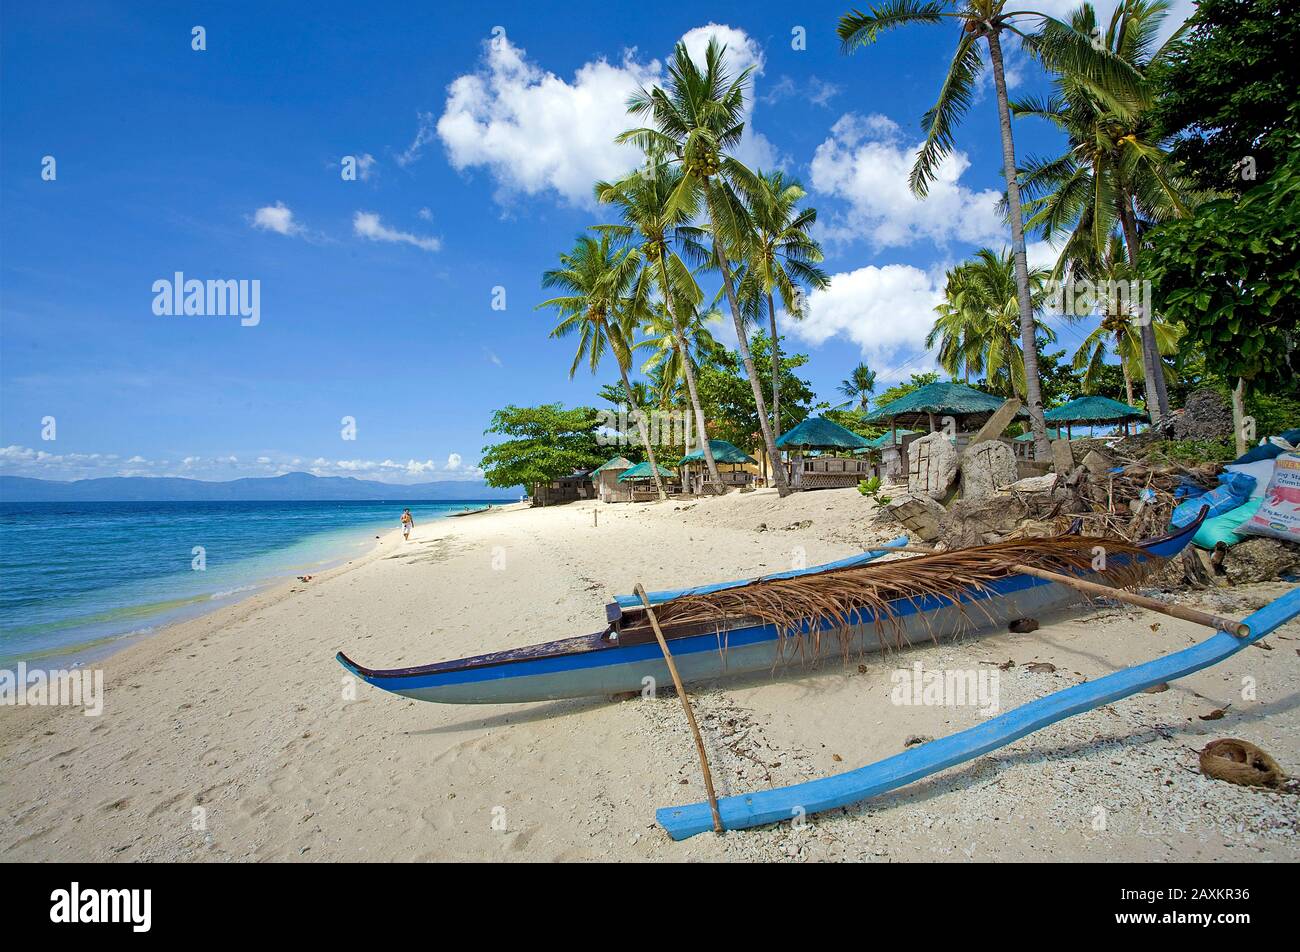 Kleines Auslegerboot am White Beach, Moalboal, Cebu, Philippinen | pequeño barco de outrigger en White Beach, Moalboal, Cebu, Filipinas Foto de stock